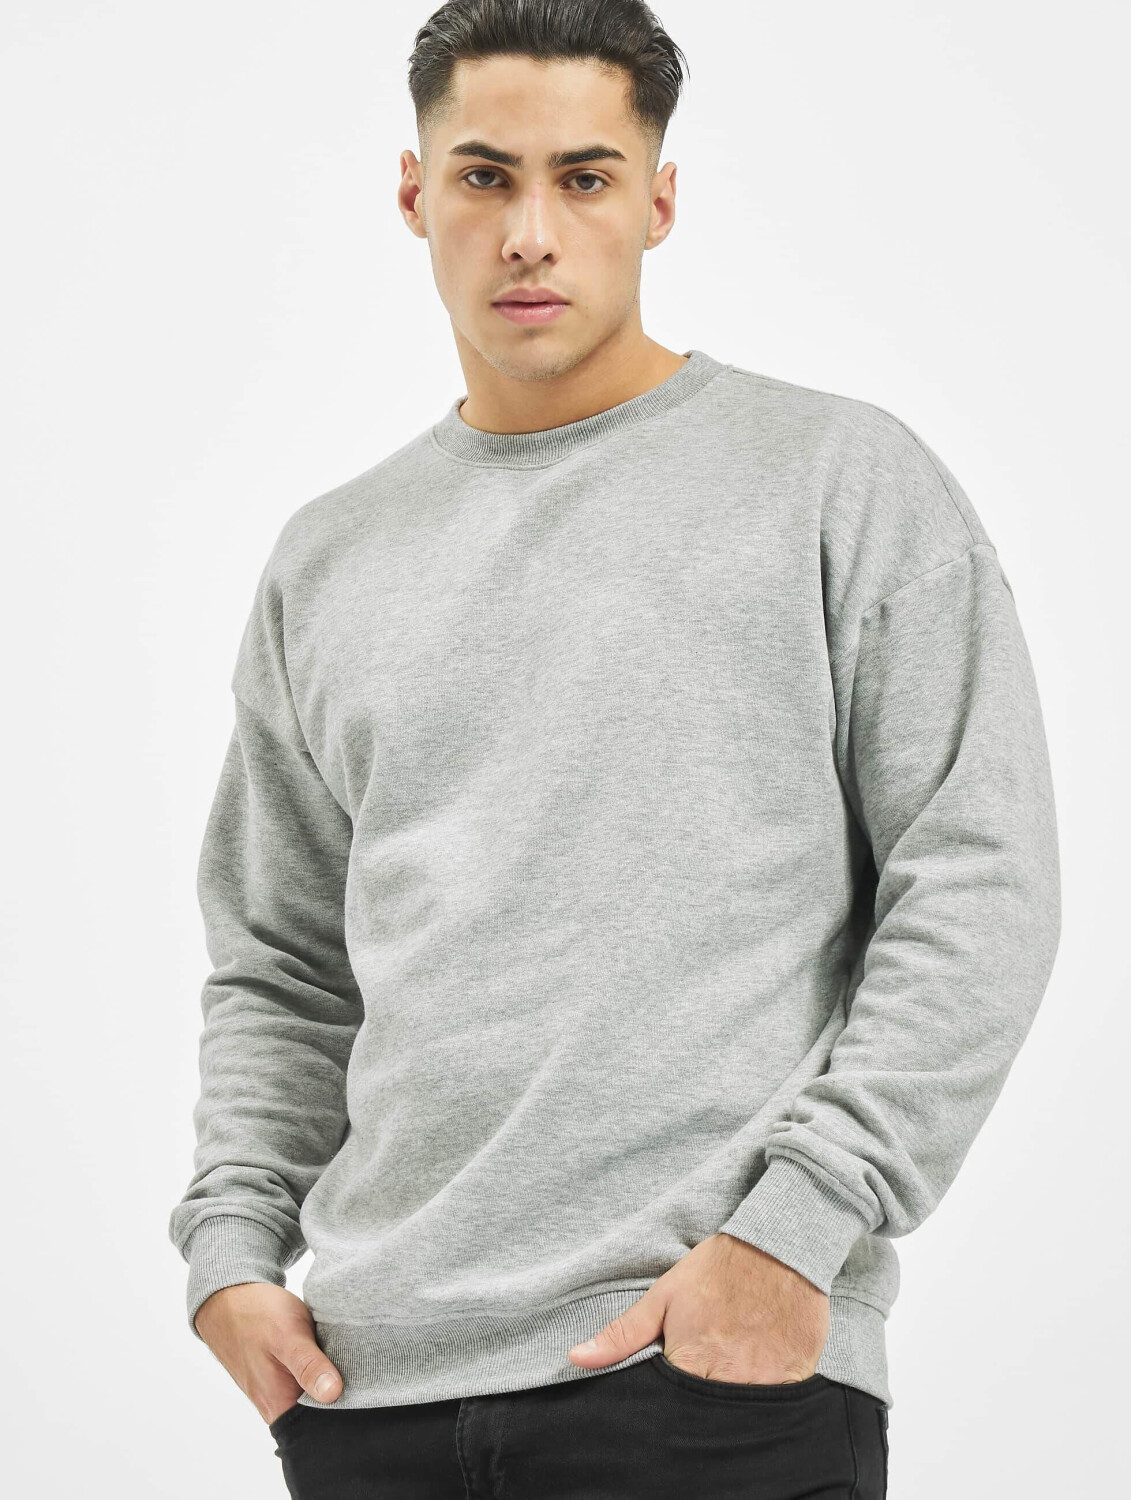 € bei Preisvergleich Classics Sweatshirt ab Camden | 22,99 Urban grey (TB1591GRY)